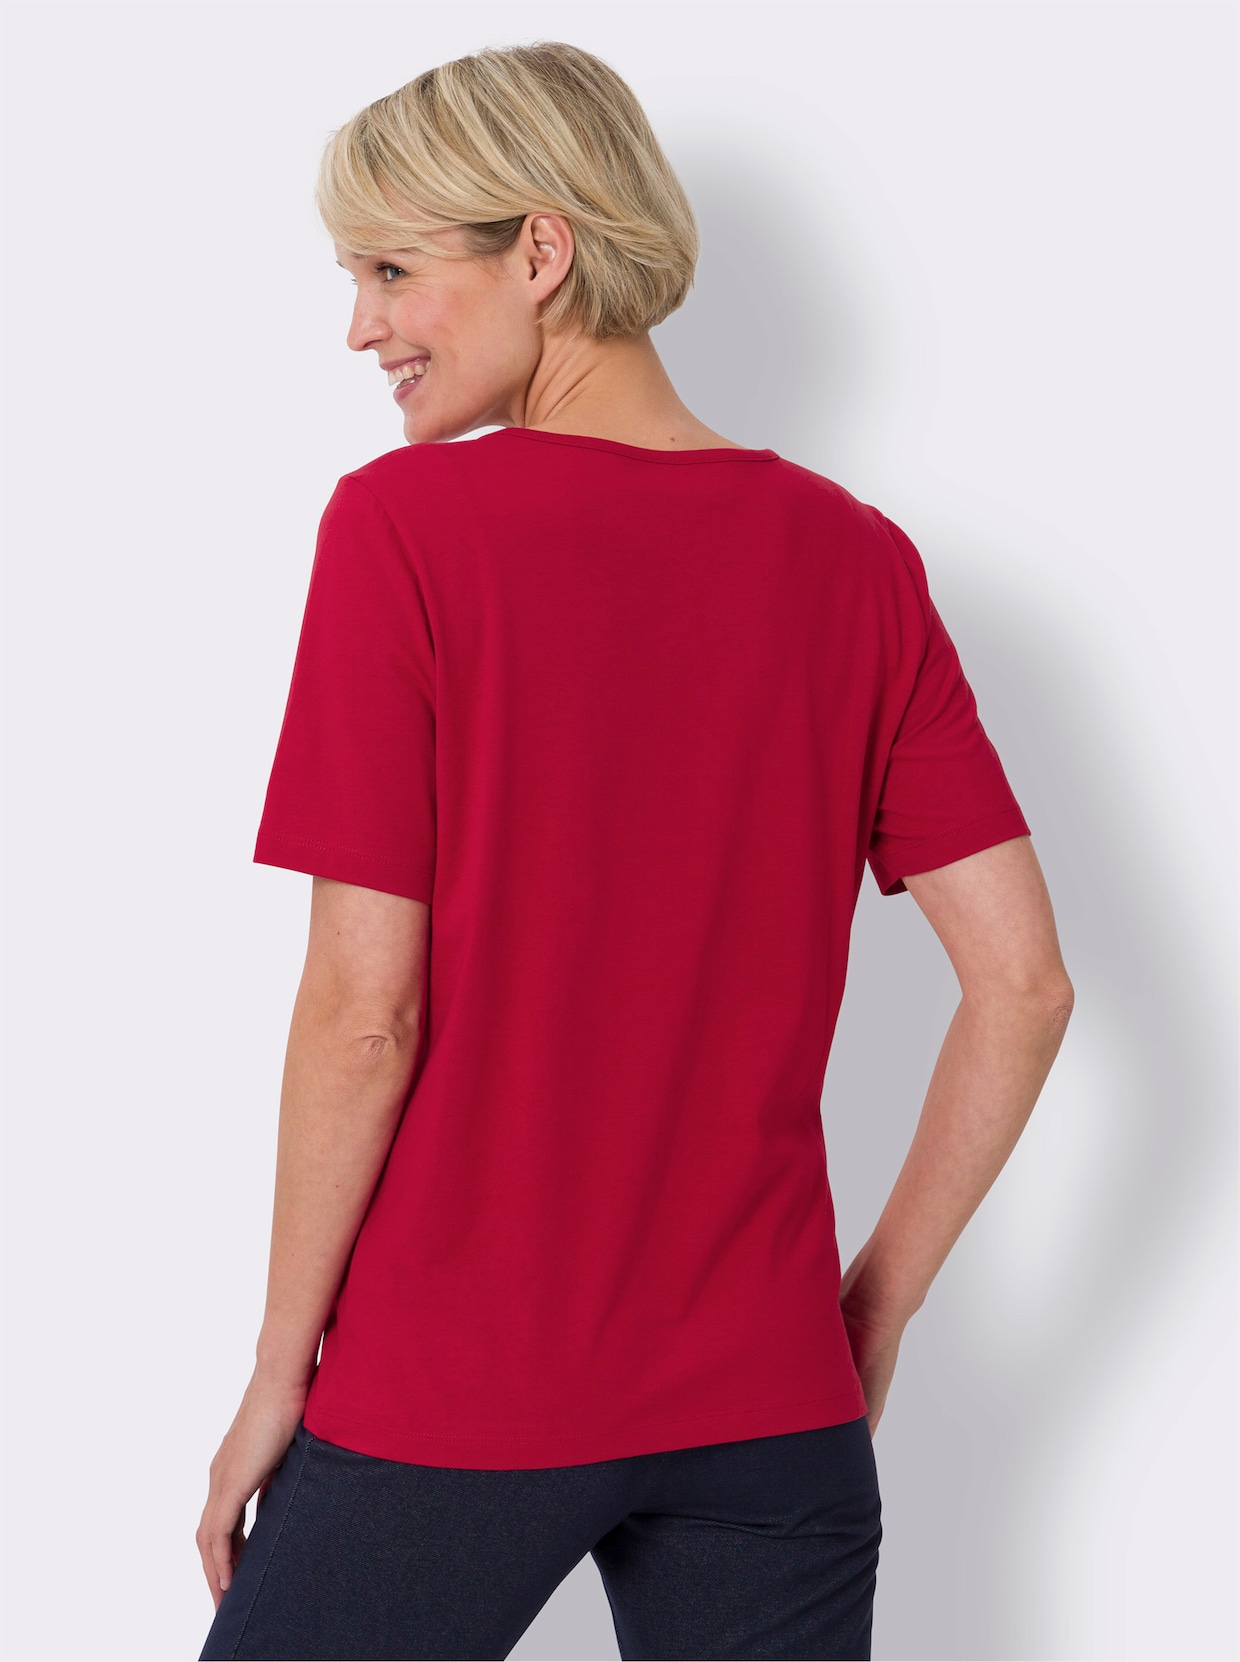 Tričko s krátkým rukávem - červená-grepová